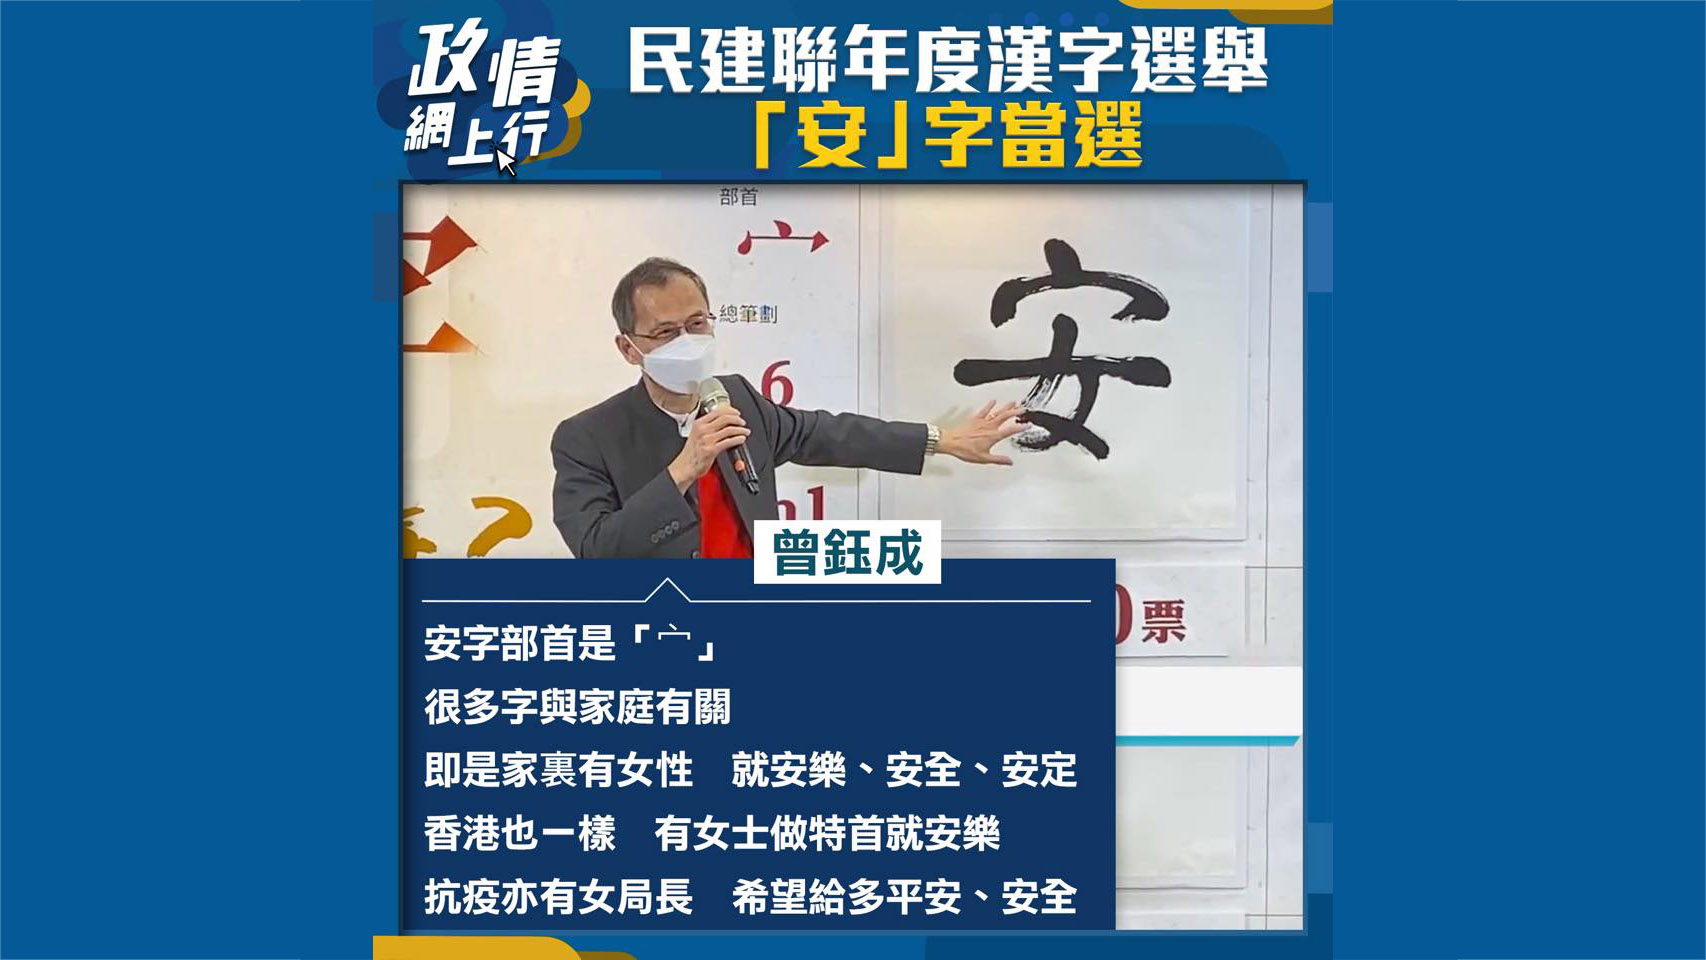 【政情網上行】民建聯年度漢字選舉「安」字當選